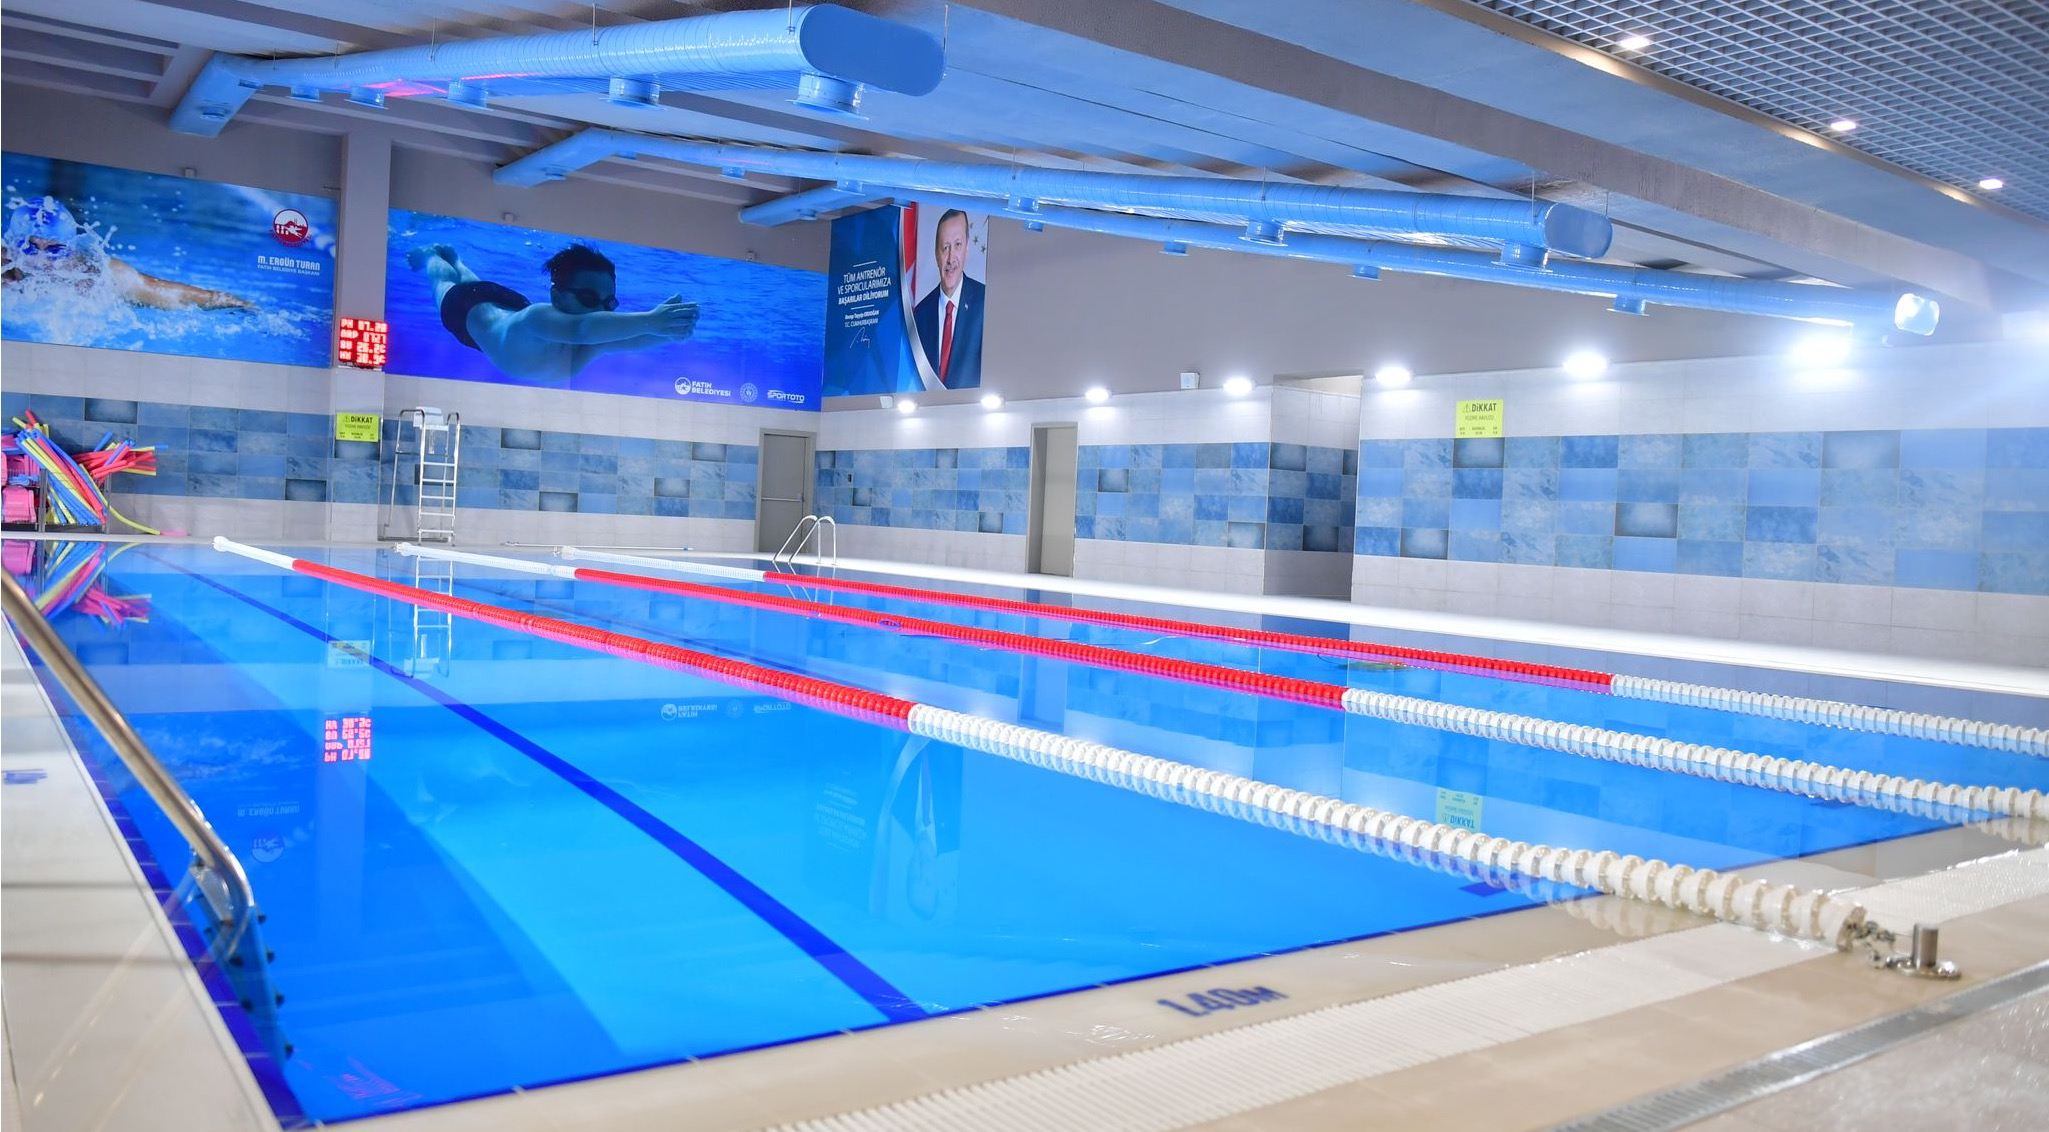 Fatih Sultan Mehmet Yüzme Havuzu Açıldı: Yazın Serinliğini ve Sporun Keyfini Bir Arada Yaşayın